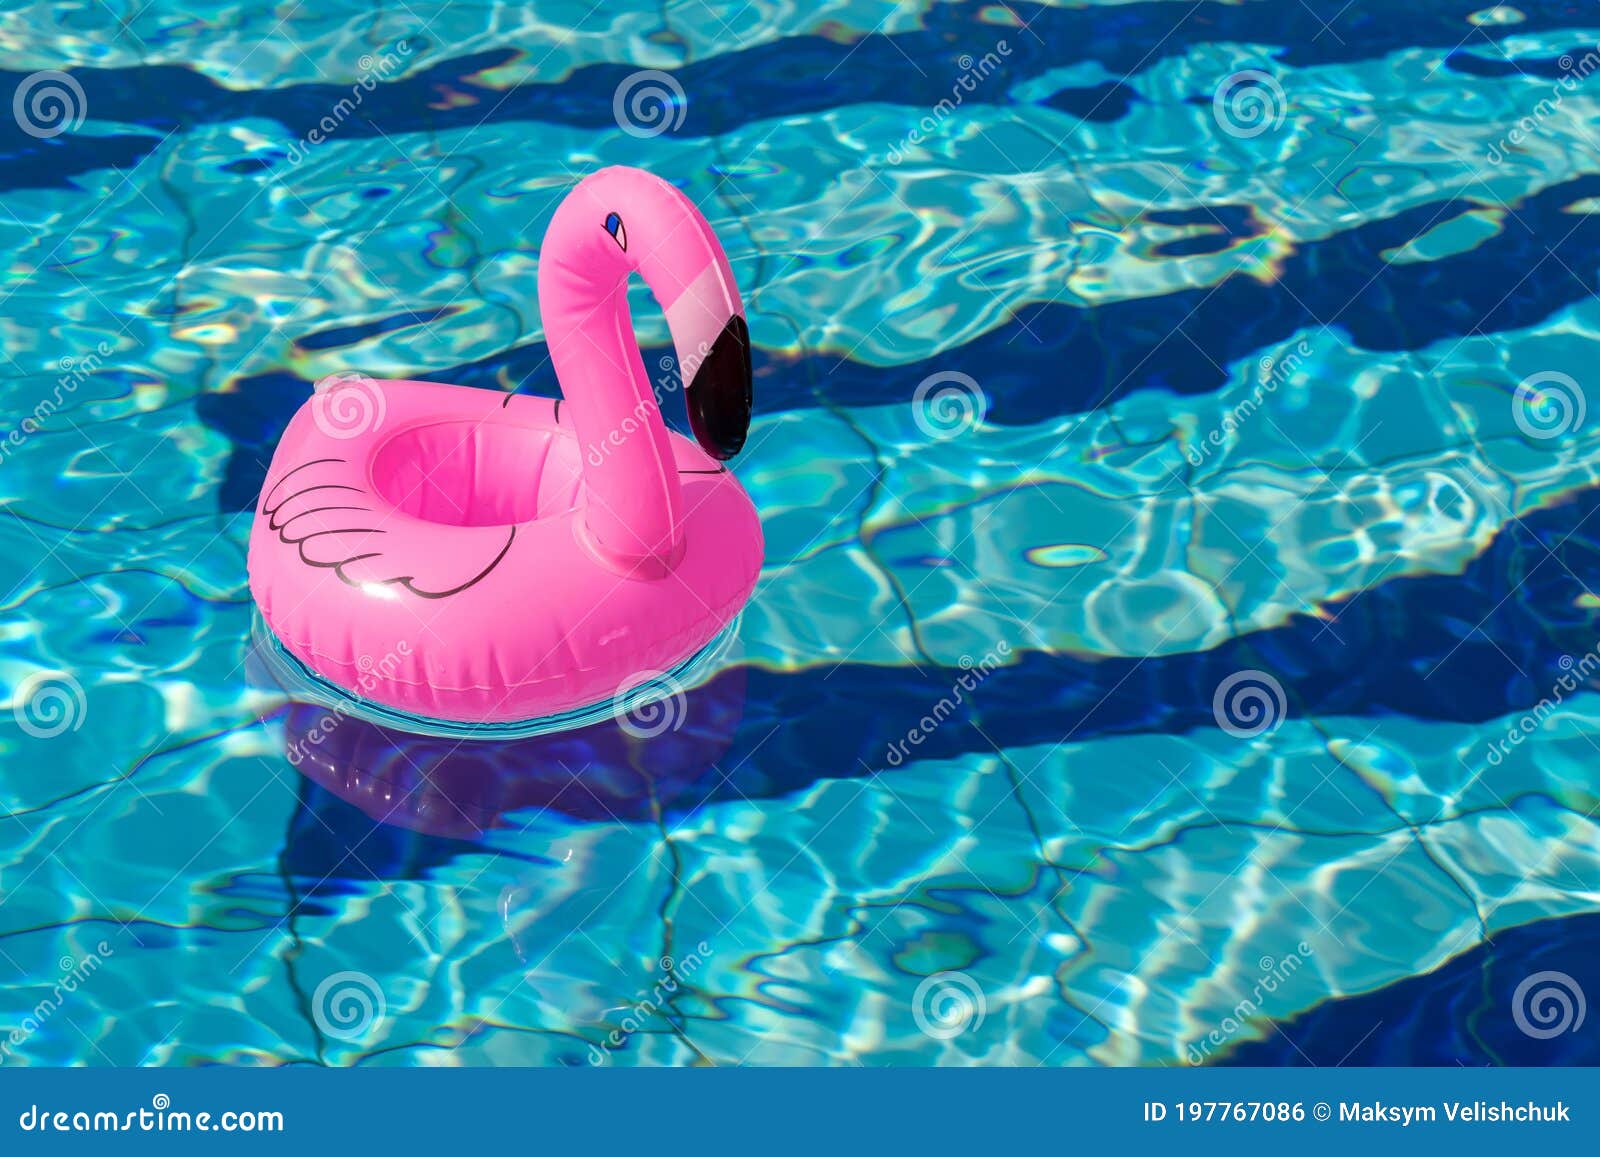 Con chim phượng hoàng hồng bơi lội trên bãi biển xanh ngắt, tạo nên một cảnh tượng vô cùng đáng yêu. Xem hình ảnh này để cảm nhận sự dễ thương và hài hước của con chim phượng hoàng hồng.